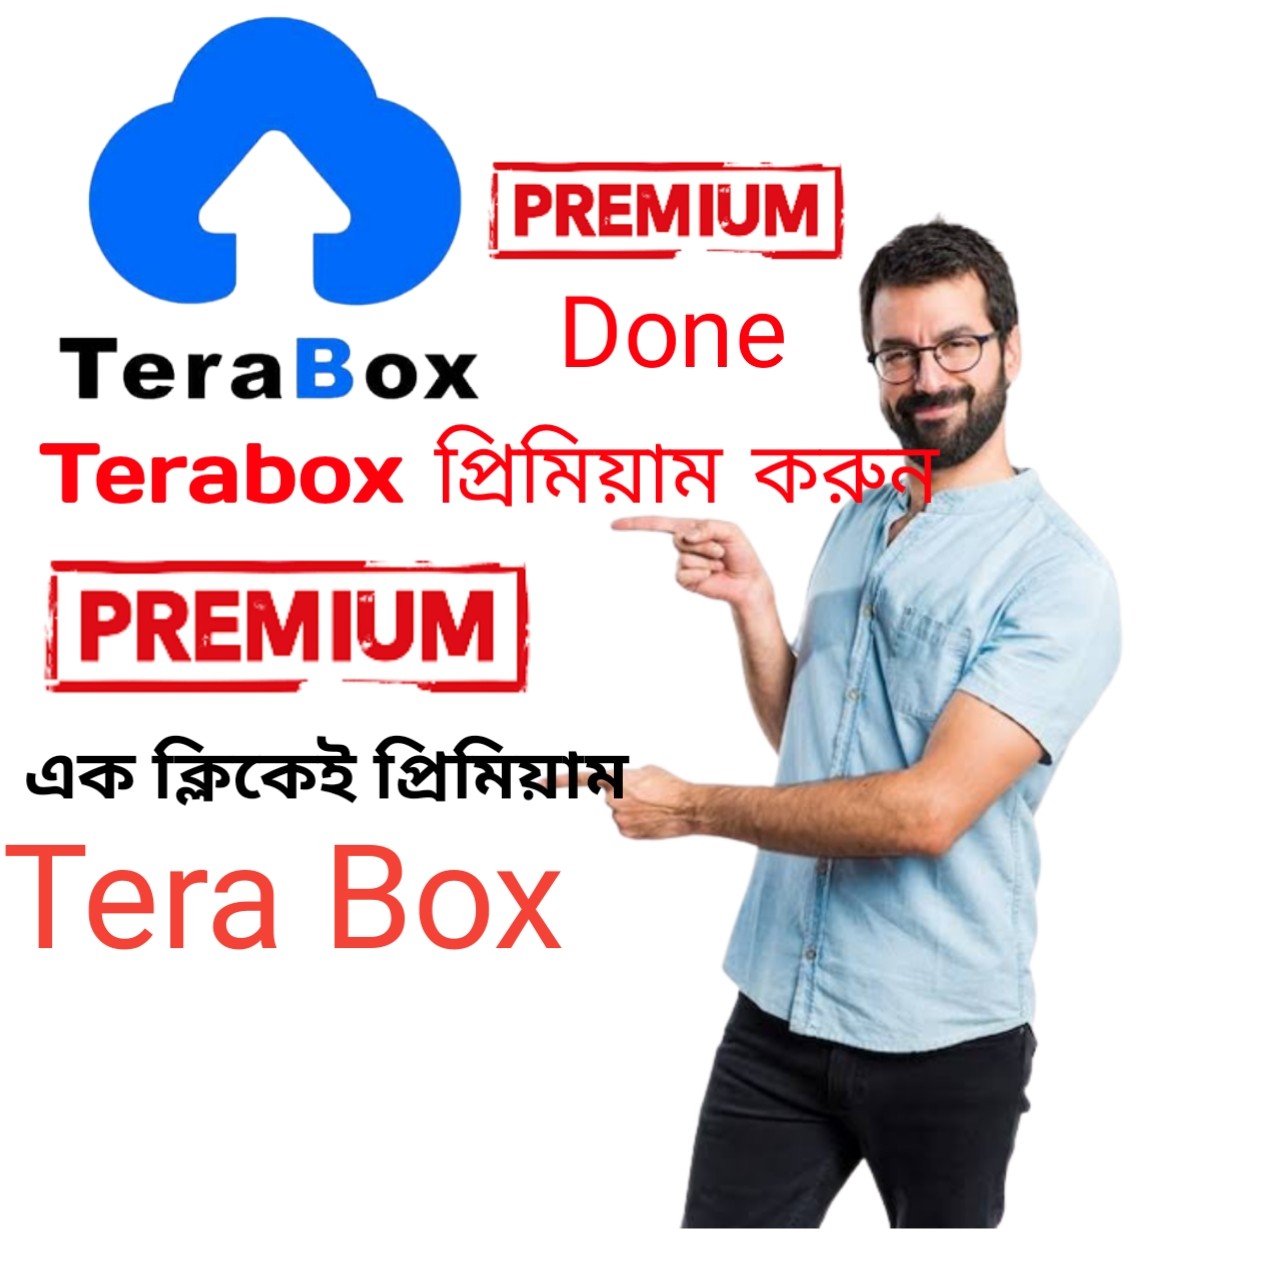 Terabox অ্যাপ্স ১ মিনিটে নিজেই প্রিমিয়াম করে ফেলুন, All Future Unlocked done